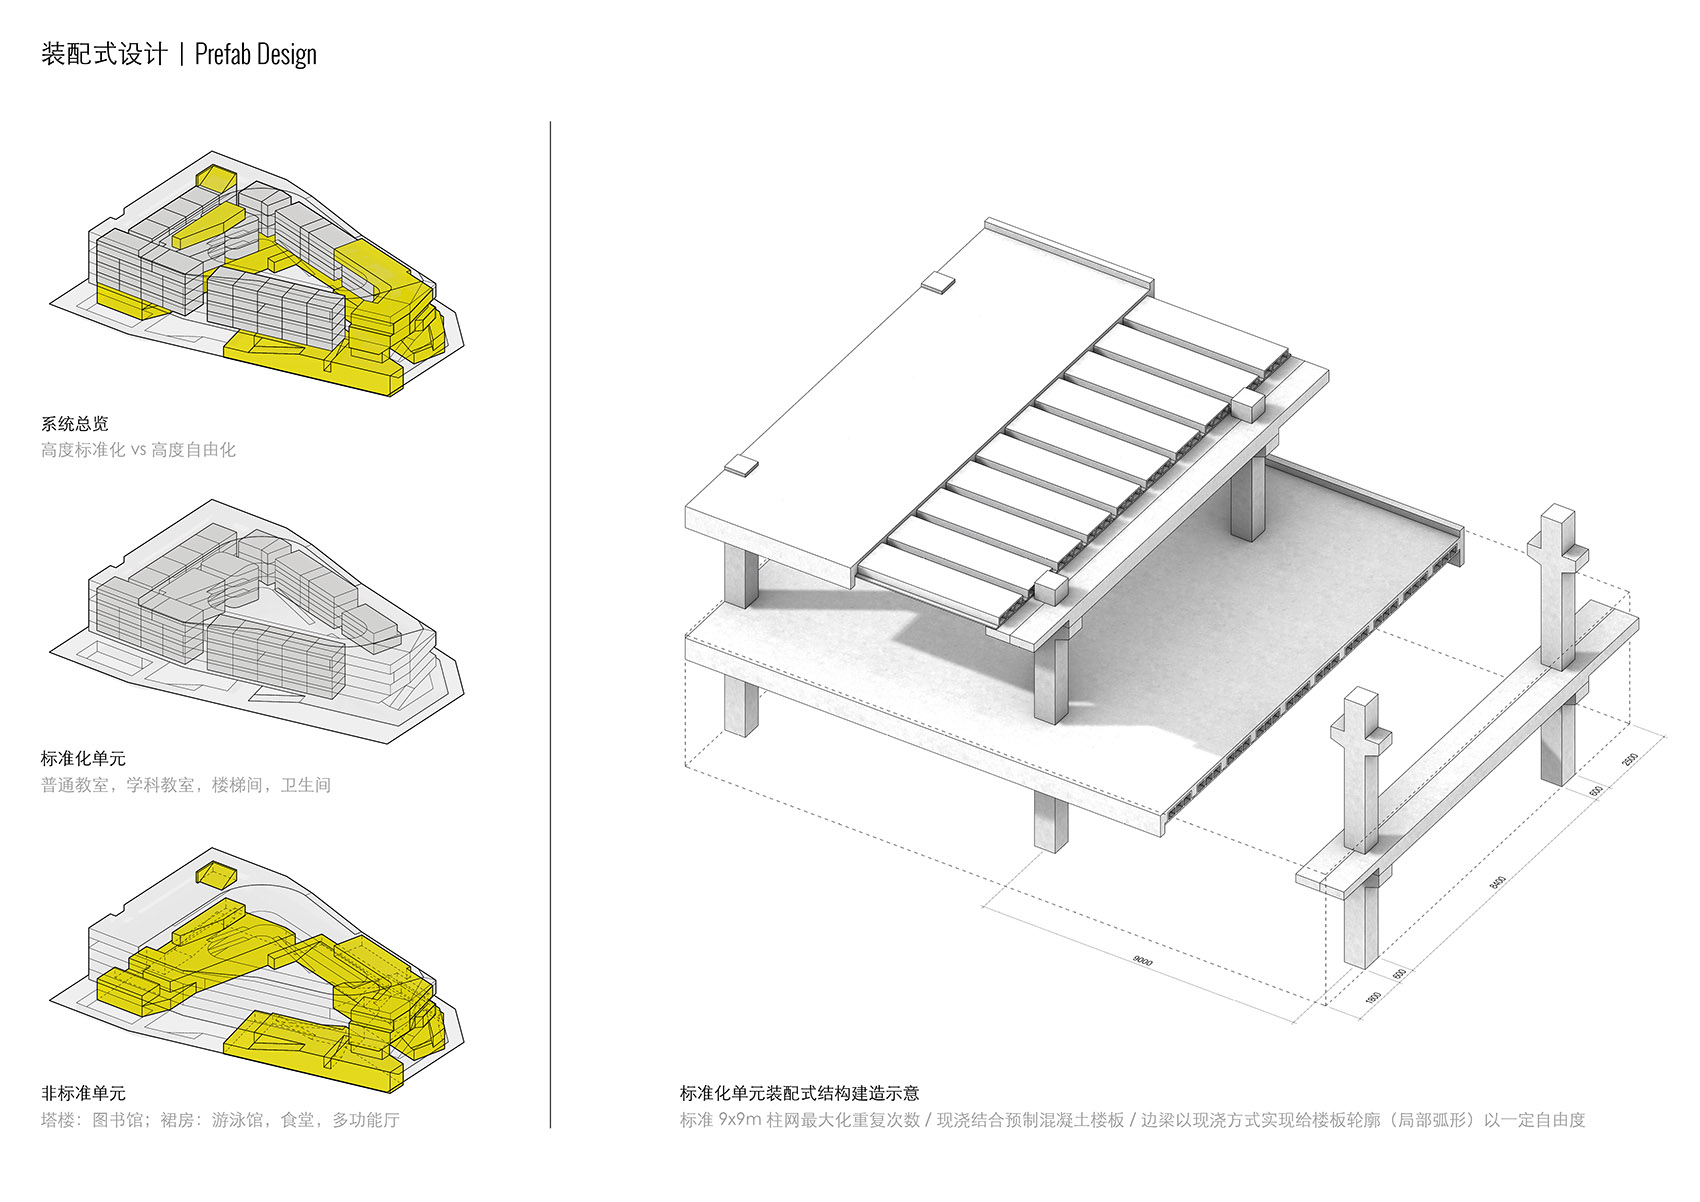 重叠校园：莲花小学校园设计，深圳/高密度垂直分区式校园-83